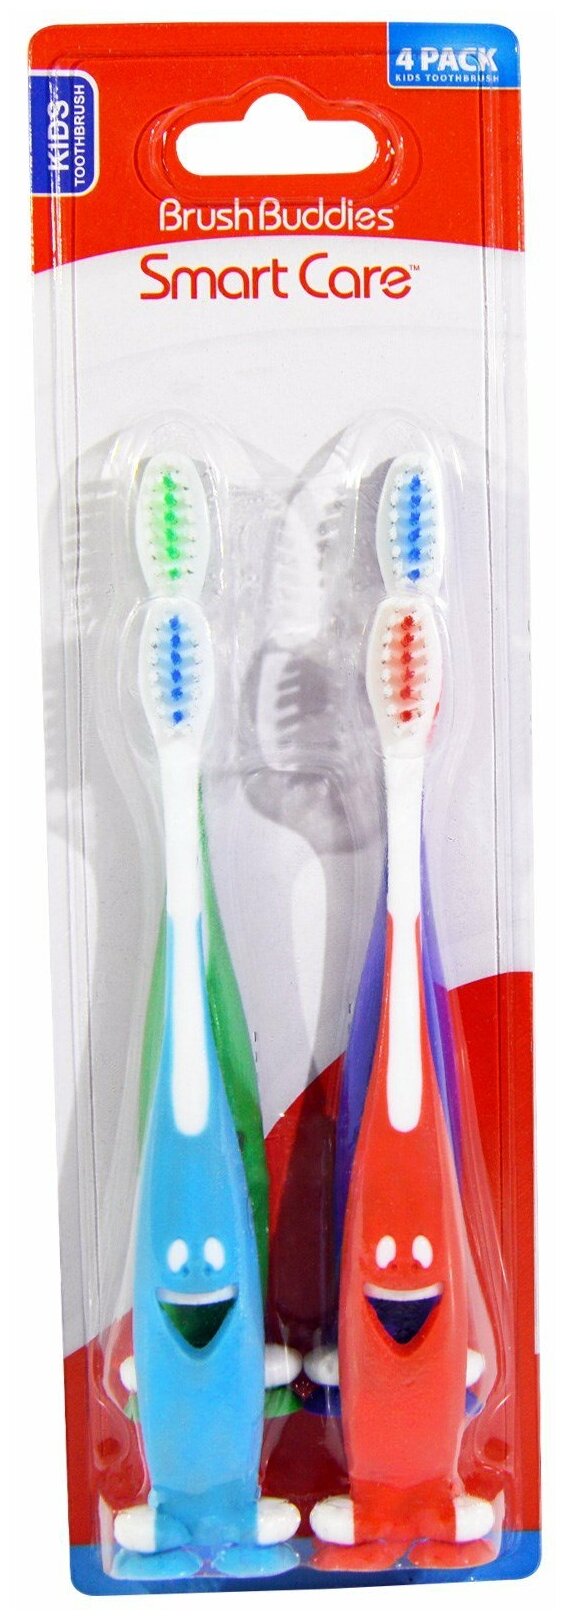 Brush Buddies, Smart Care, Набор детских зубных щеток, 4 цвета, на присосках